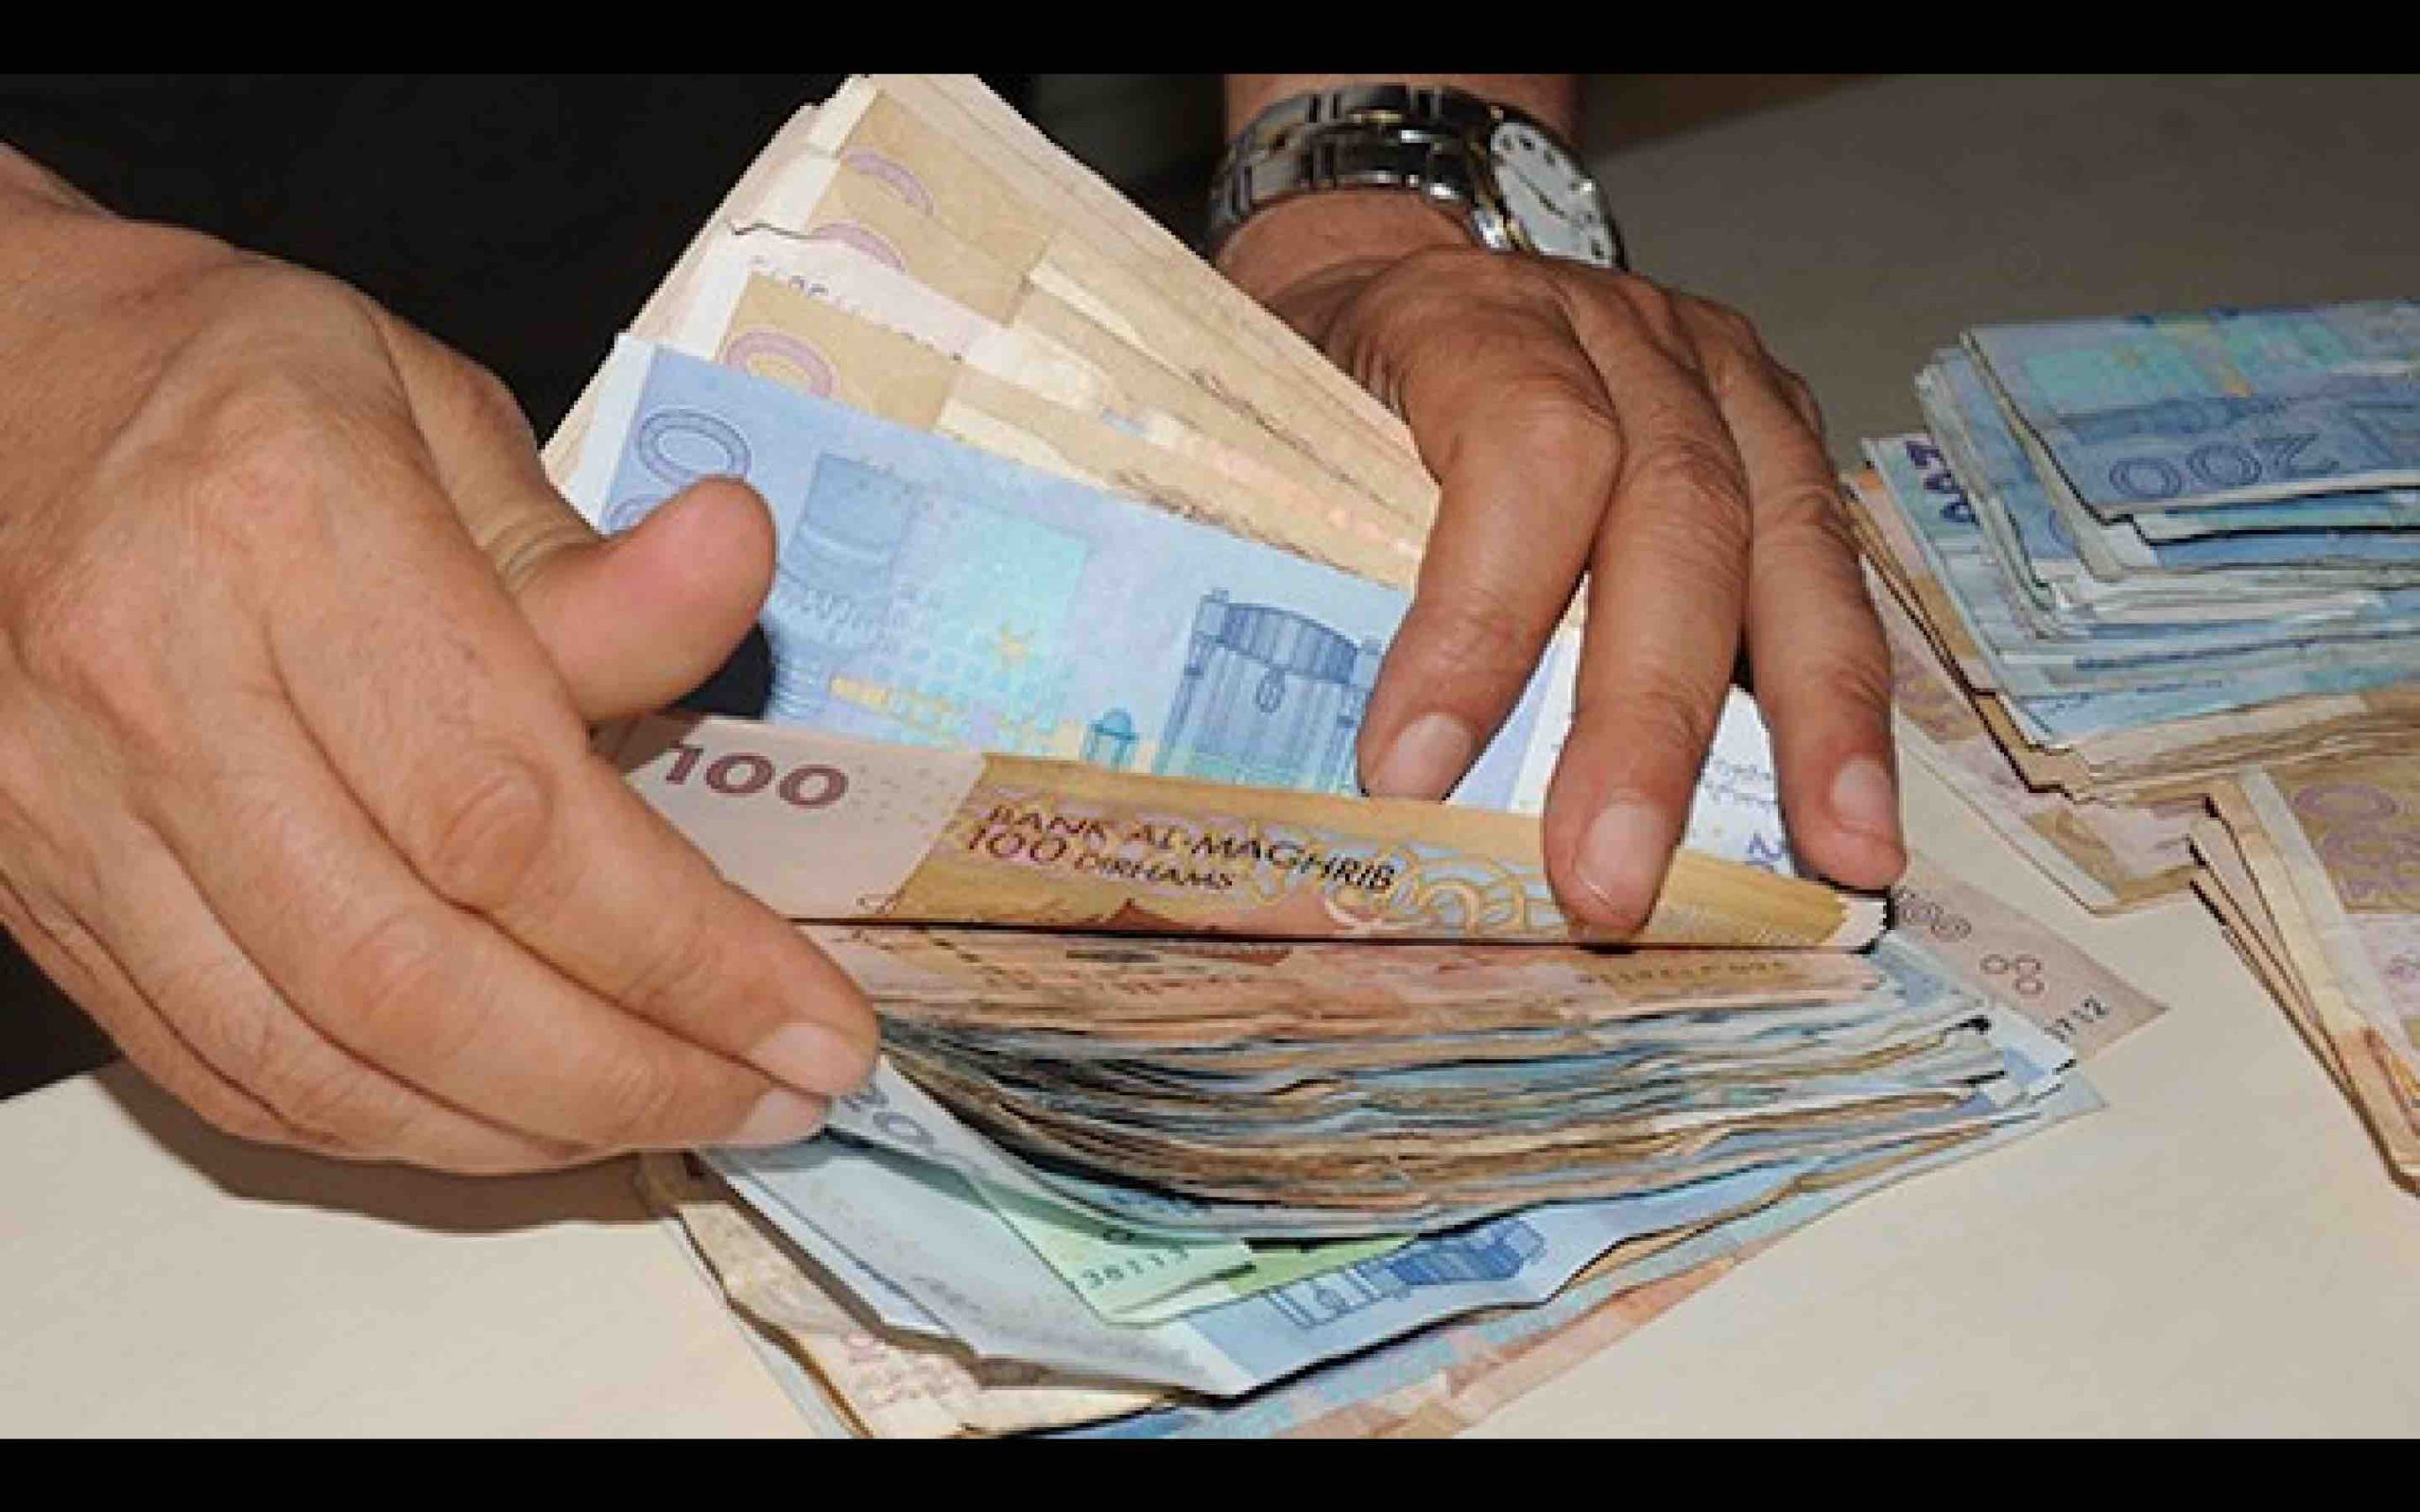 المغاربة حصلوا على 120 مليارا من القروض الاستهلاكية "الحلال"